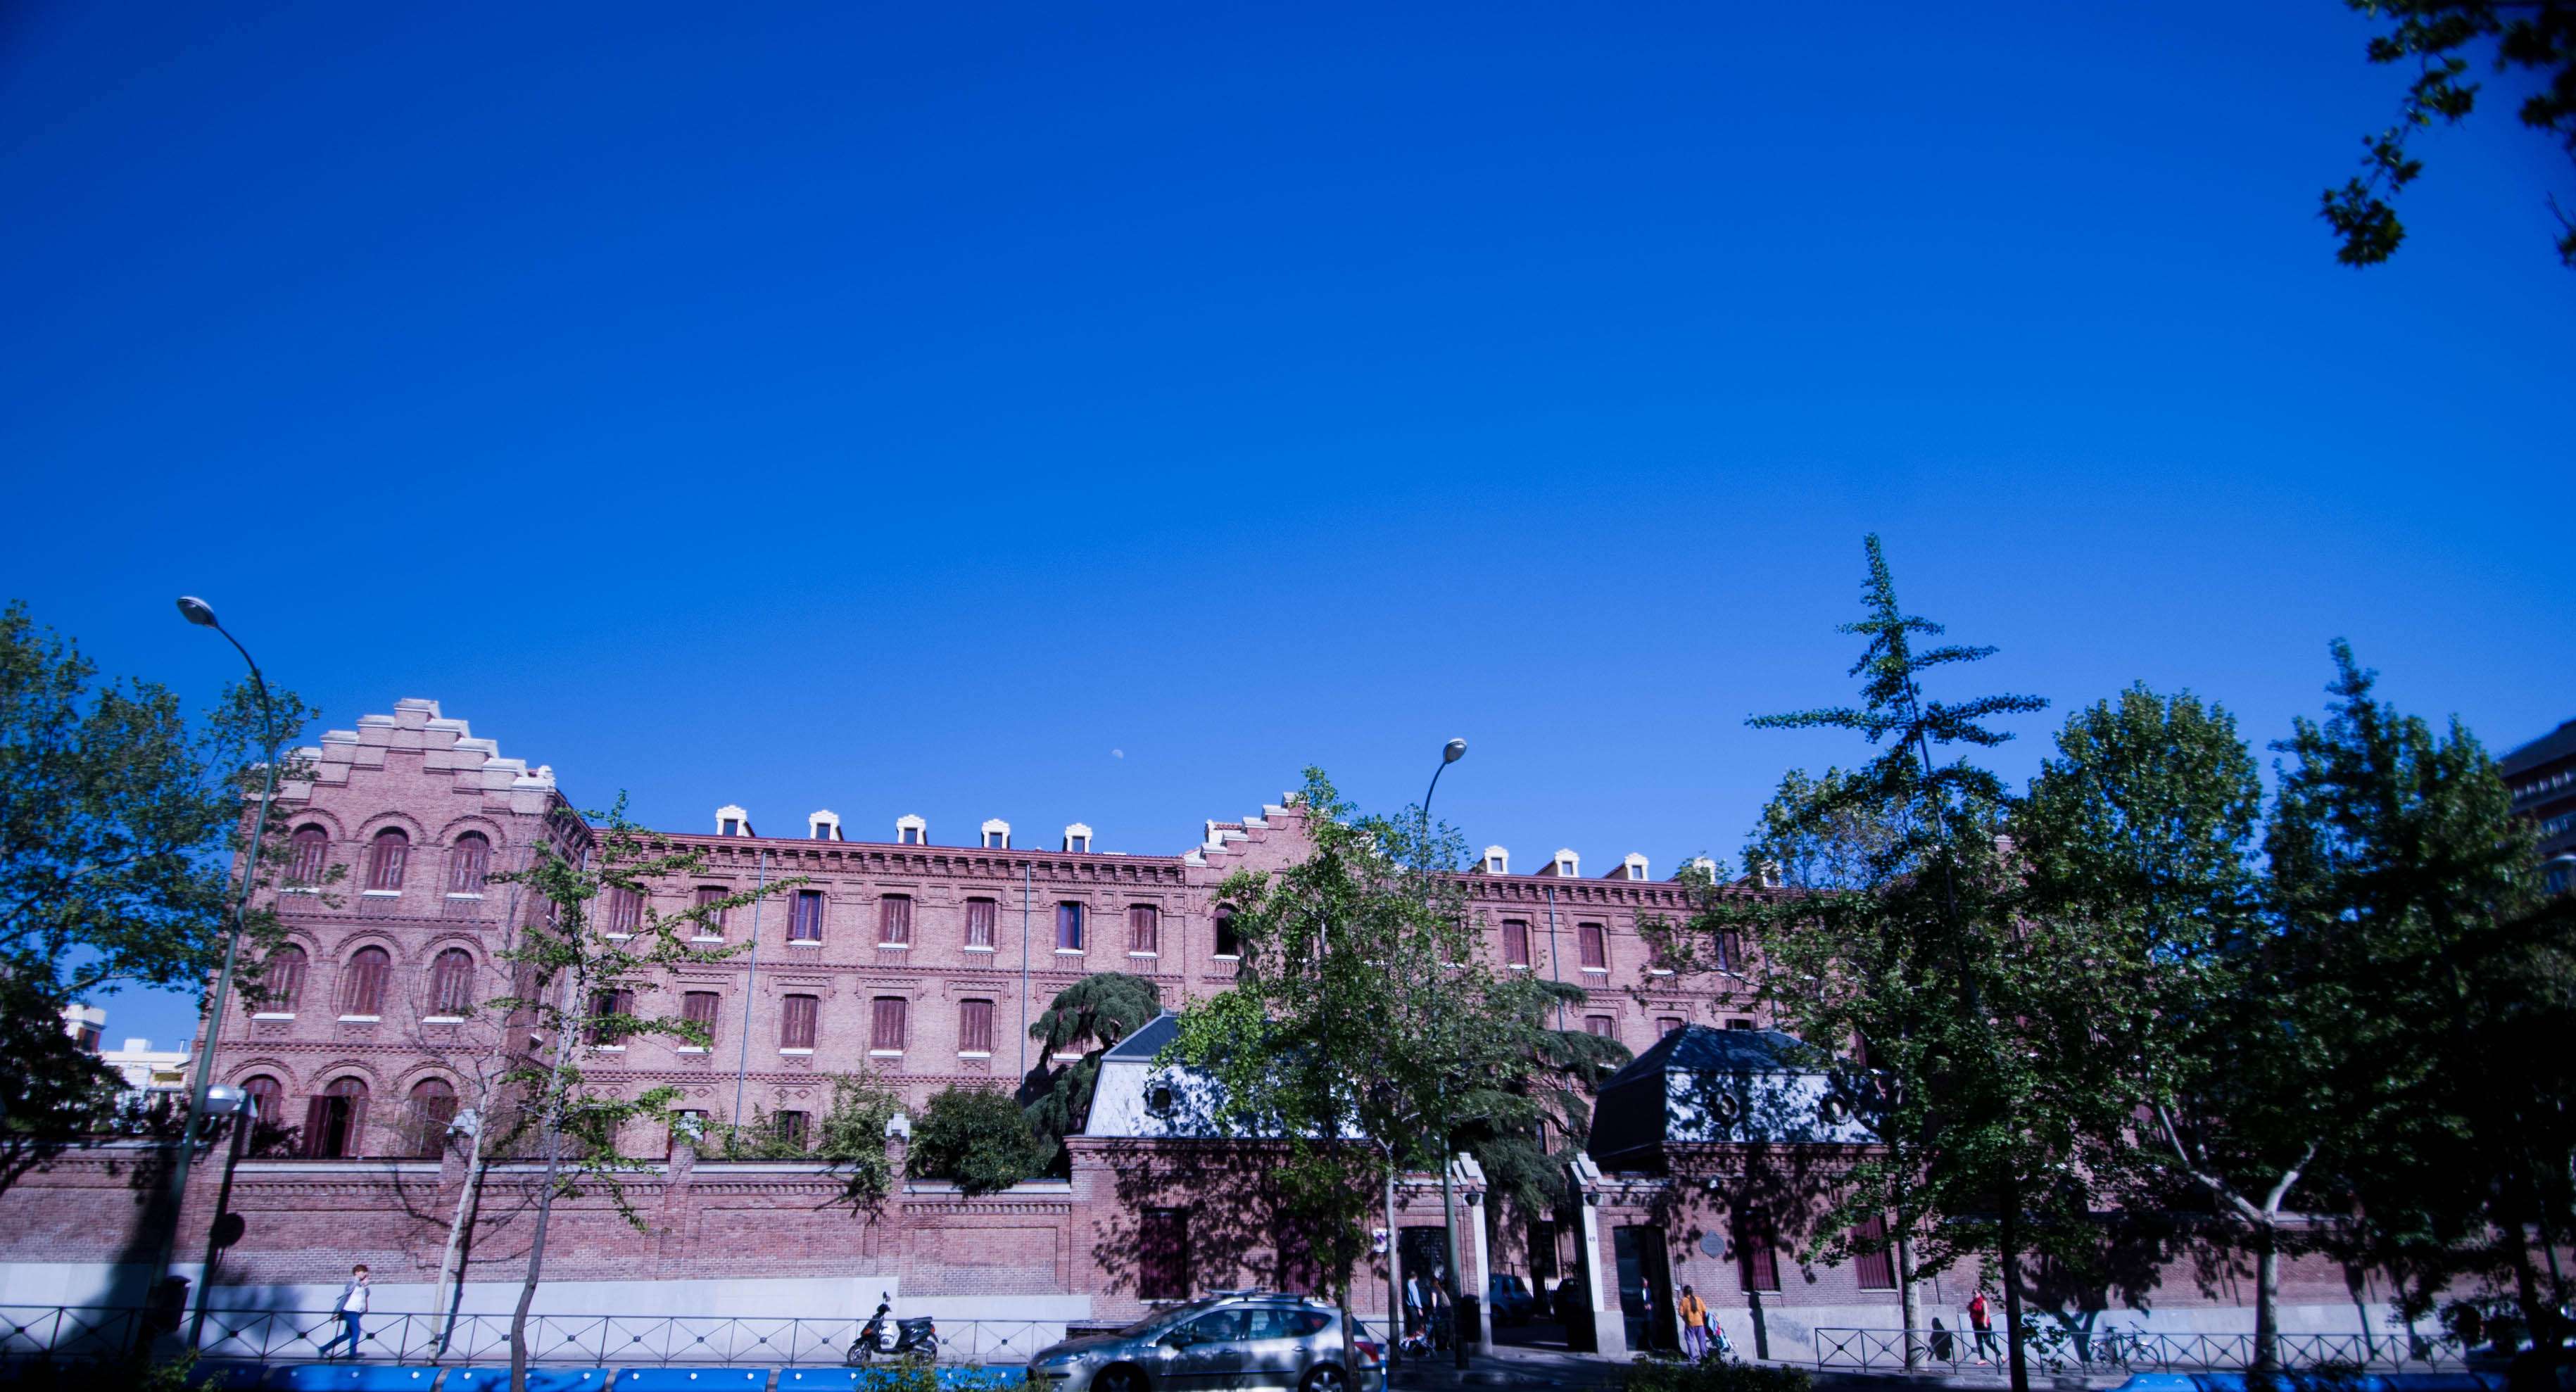 De Palacetes por el Barrio de Salamanca - Paseos y Rutas por Madrid (5)